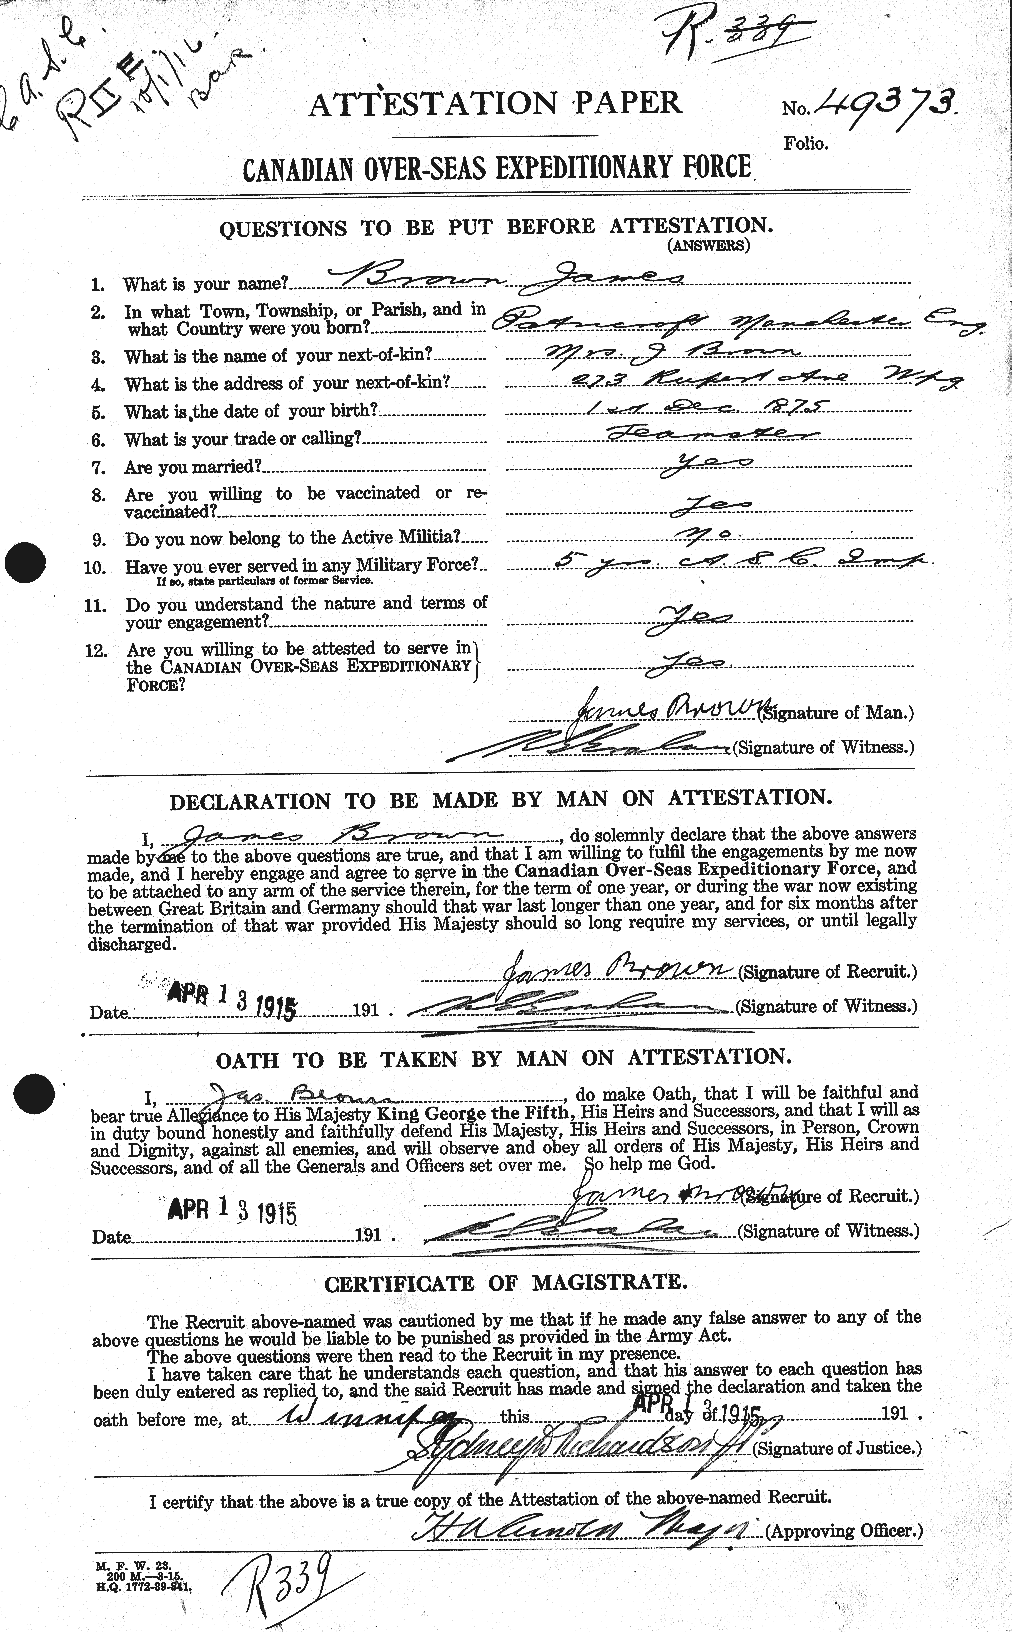 Dossiers du Personnel de la Première Guerre mondiale - CEC 265761a